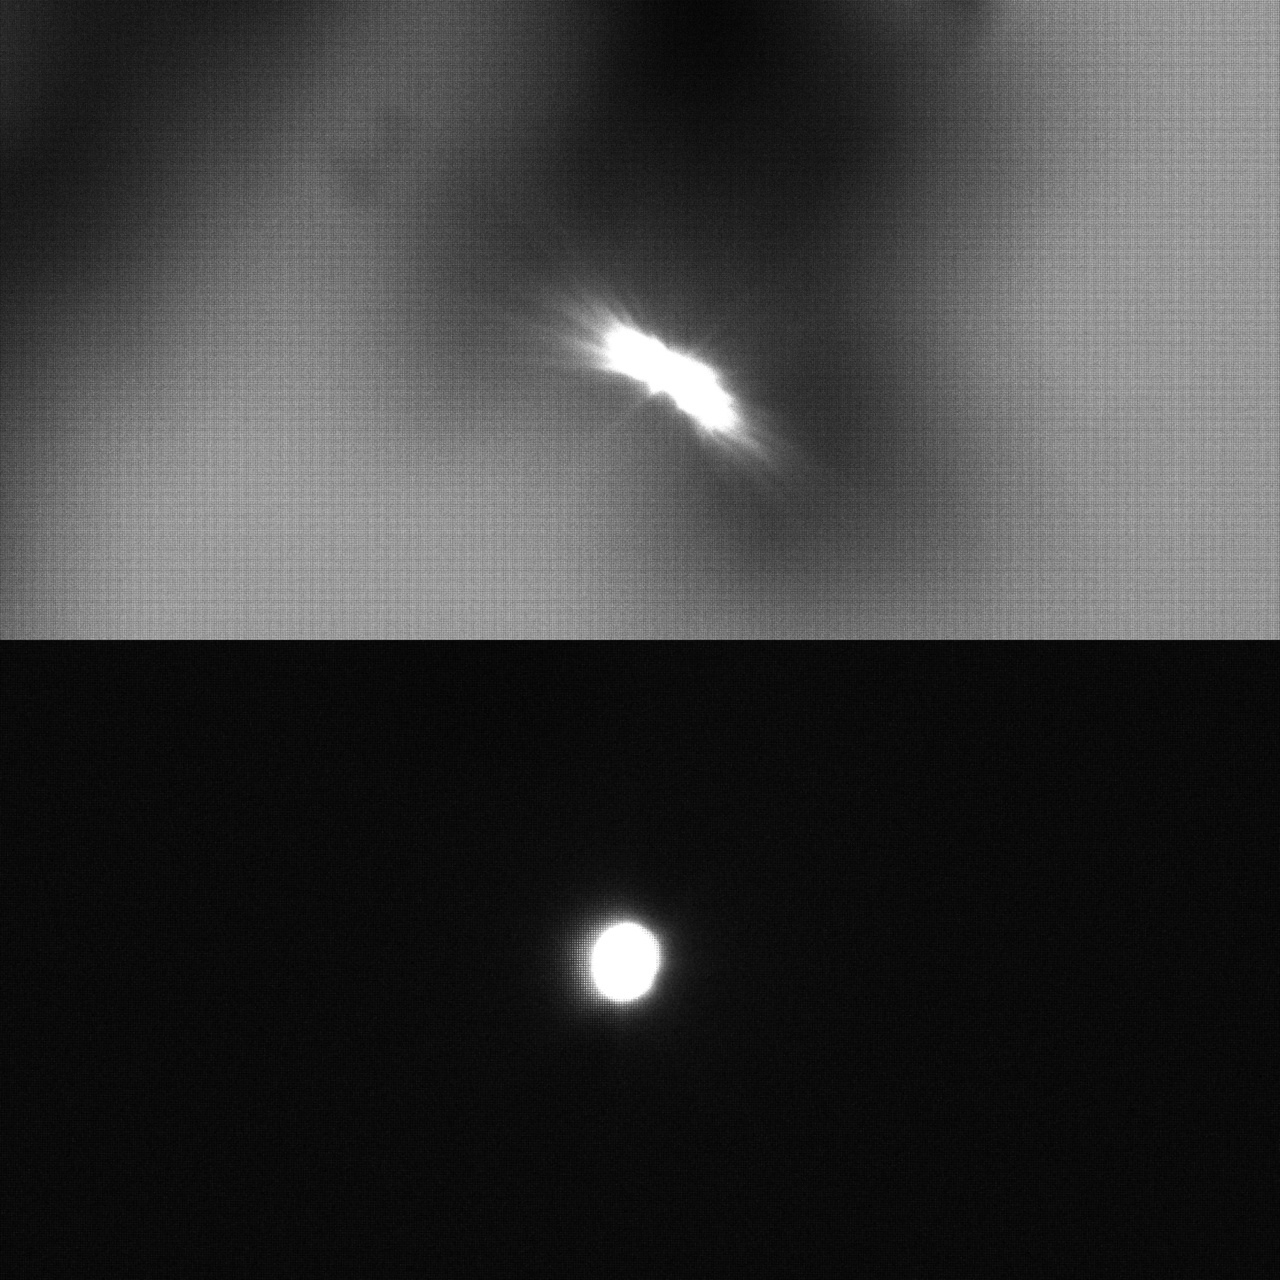 Сняли Венеру на сборку купленную отдельно, близкую к третьему варианту. Телескоп ТАЛ-2, астрокамера ZWO ASI120MM. Получилось не очень из-за недостатка опыта у меня за пультом программы, управляющей камерой, и сосны, закрывающей космос от объектива